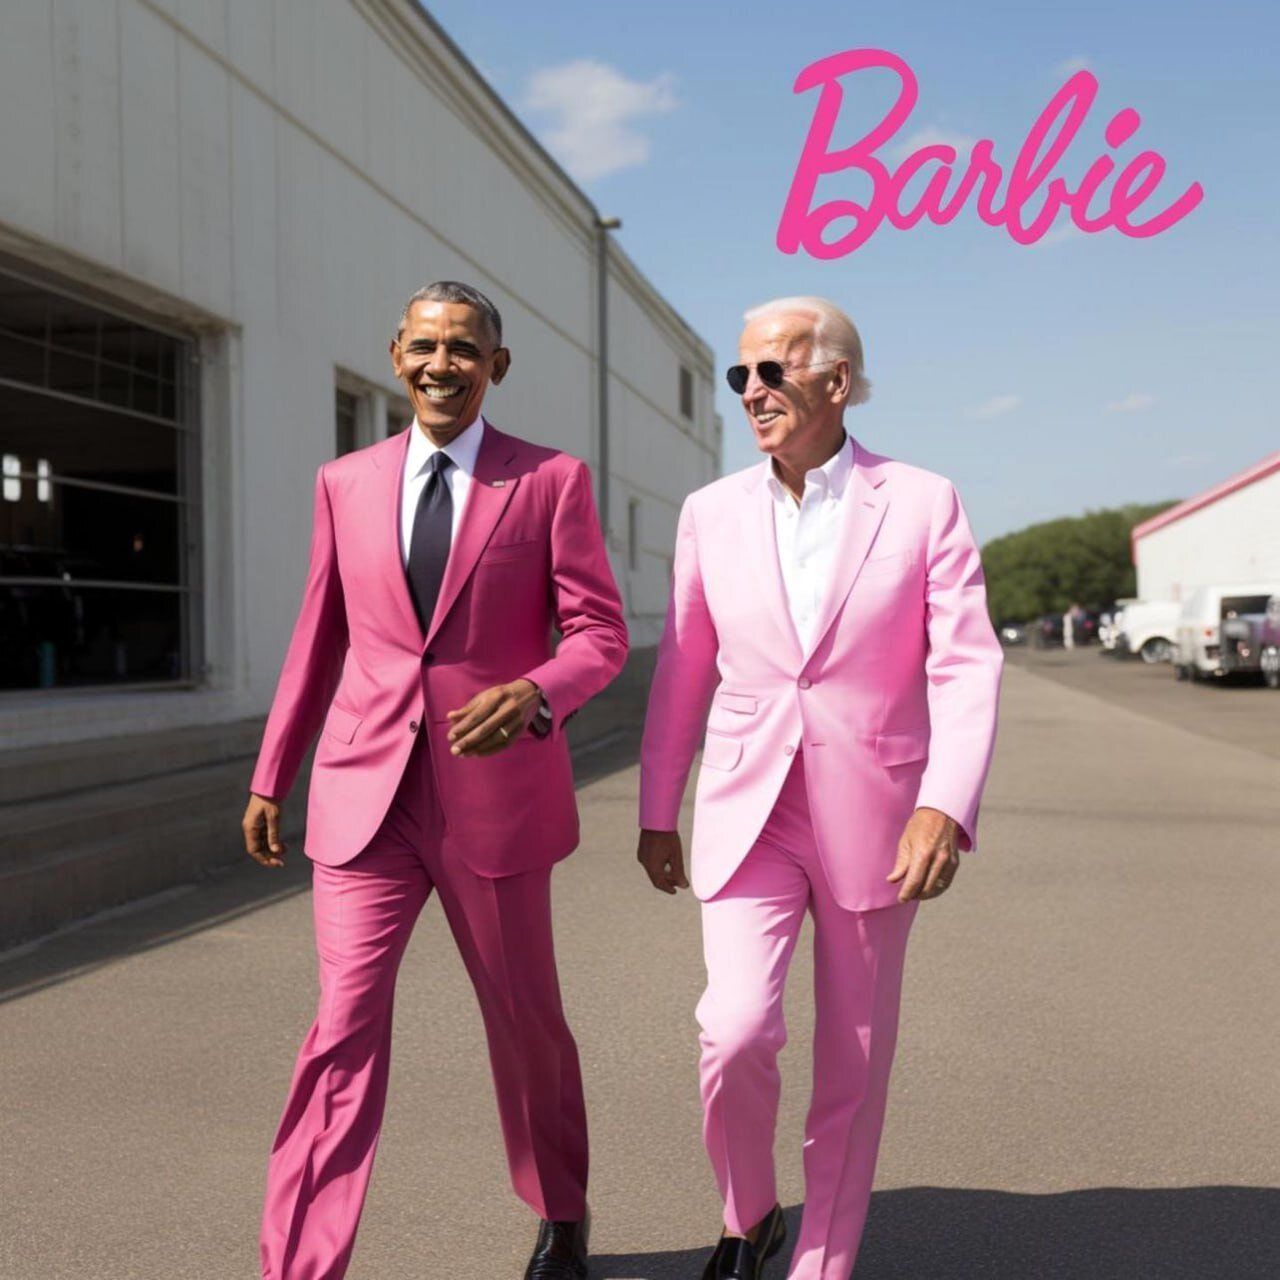 عکس | شوخی خبرساز با باراک اوباما و جو بایدن؛ کت شلوار صورتی به سوی باربی!